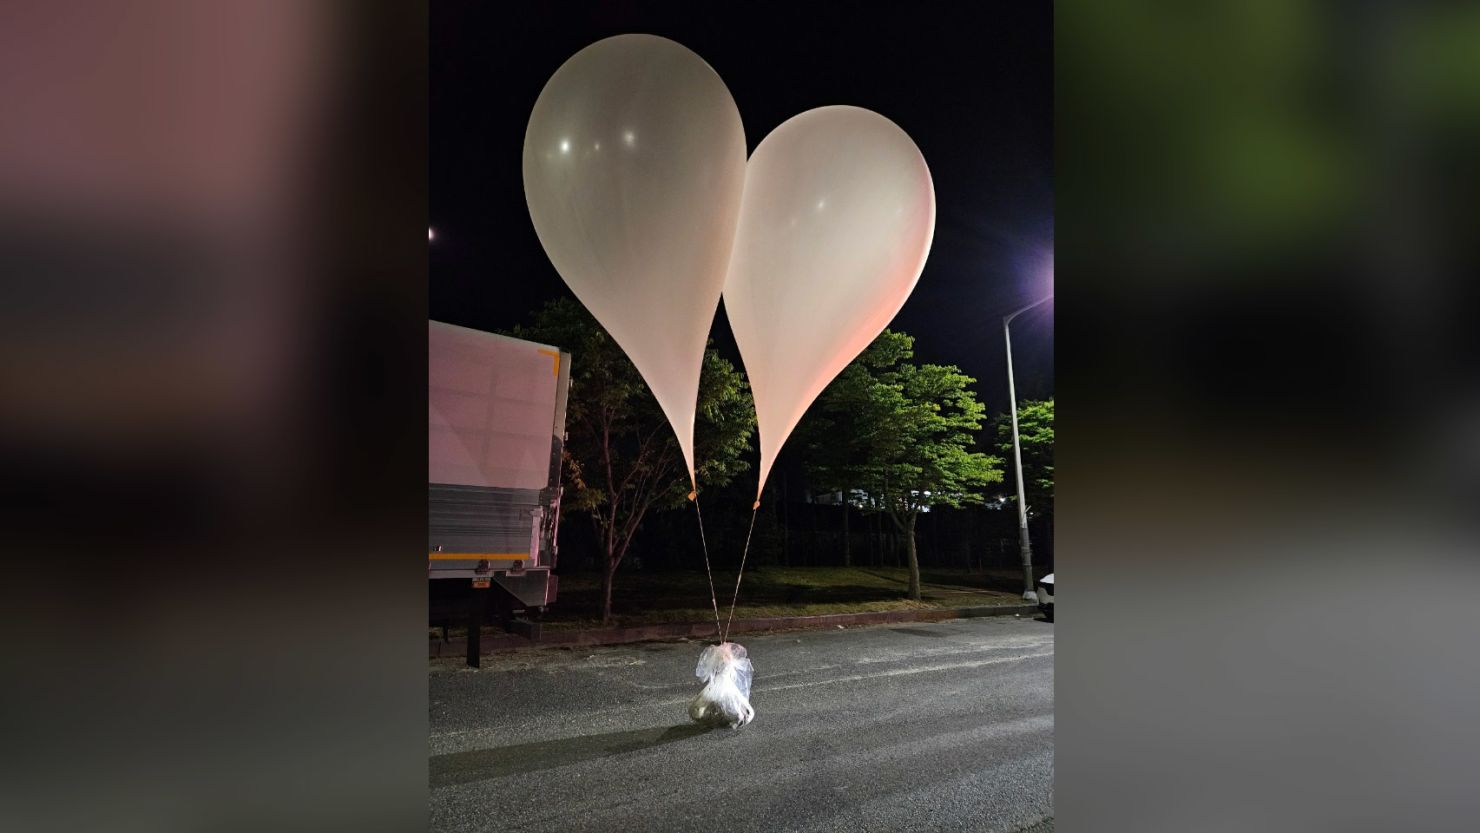 Kuzey Kore, Güney Kore'ye çöp dolu balonlar gönderdi